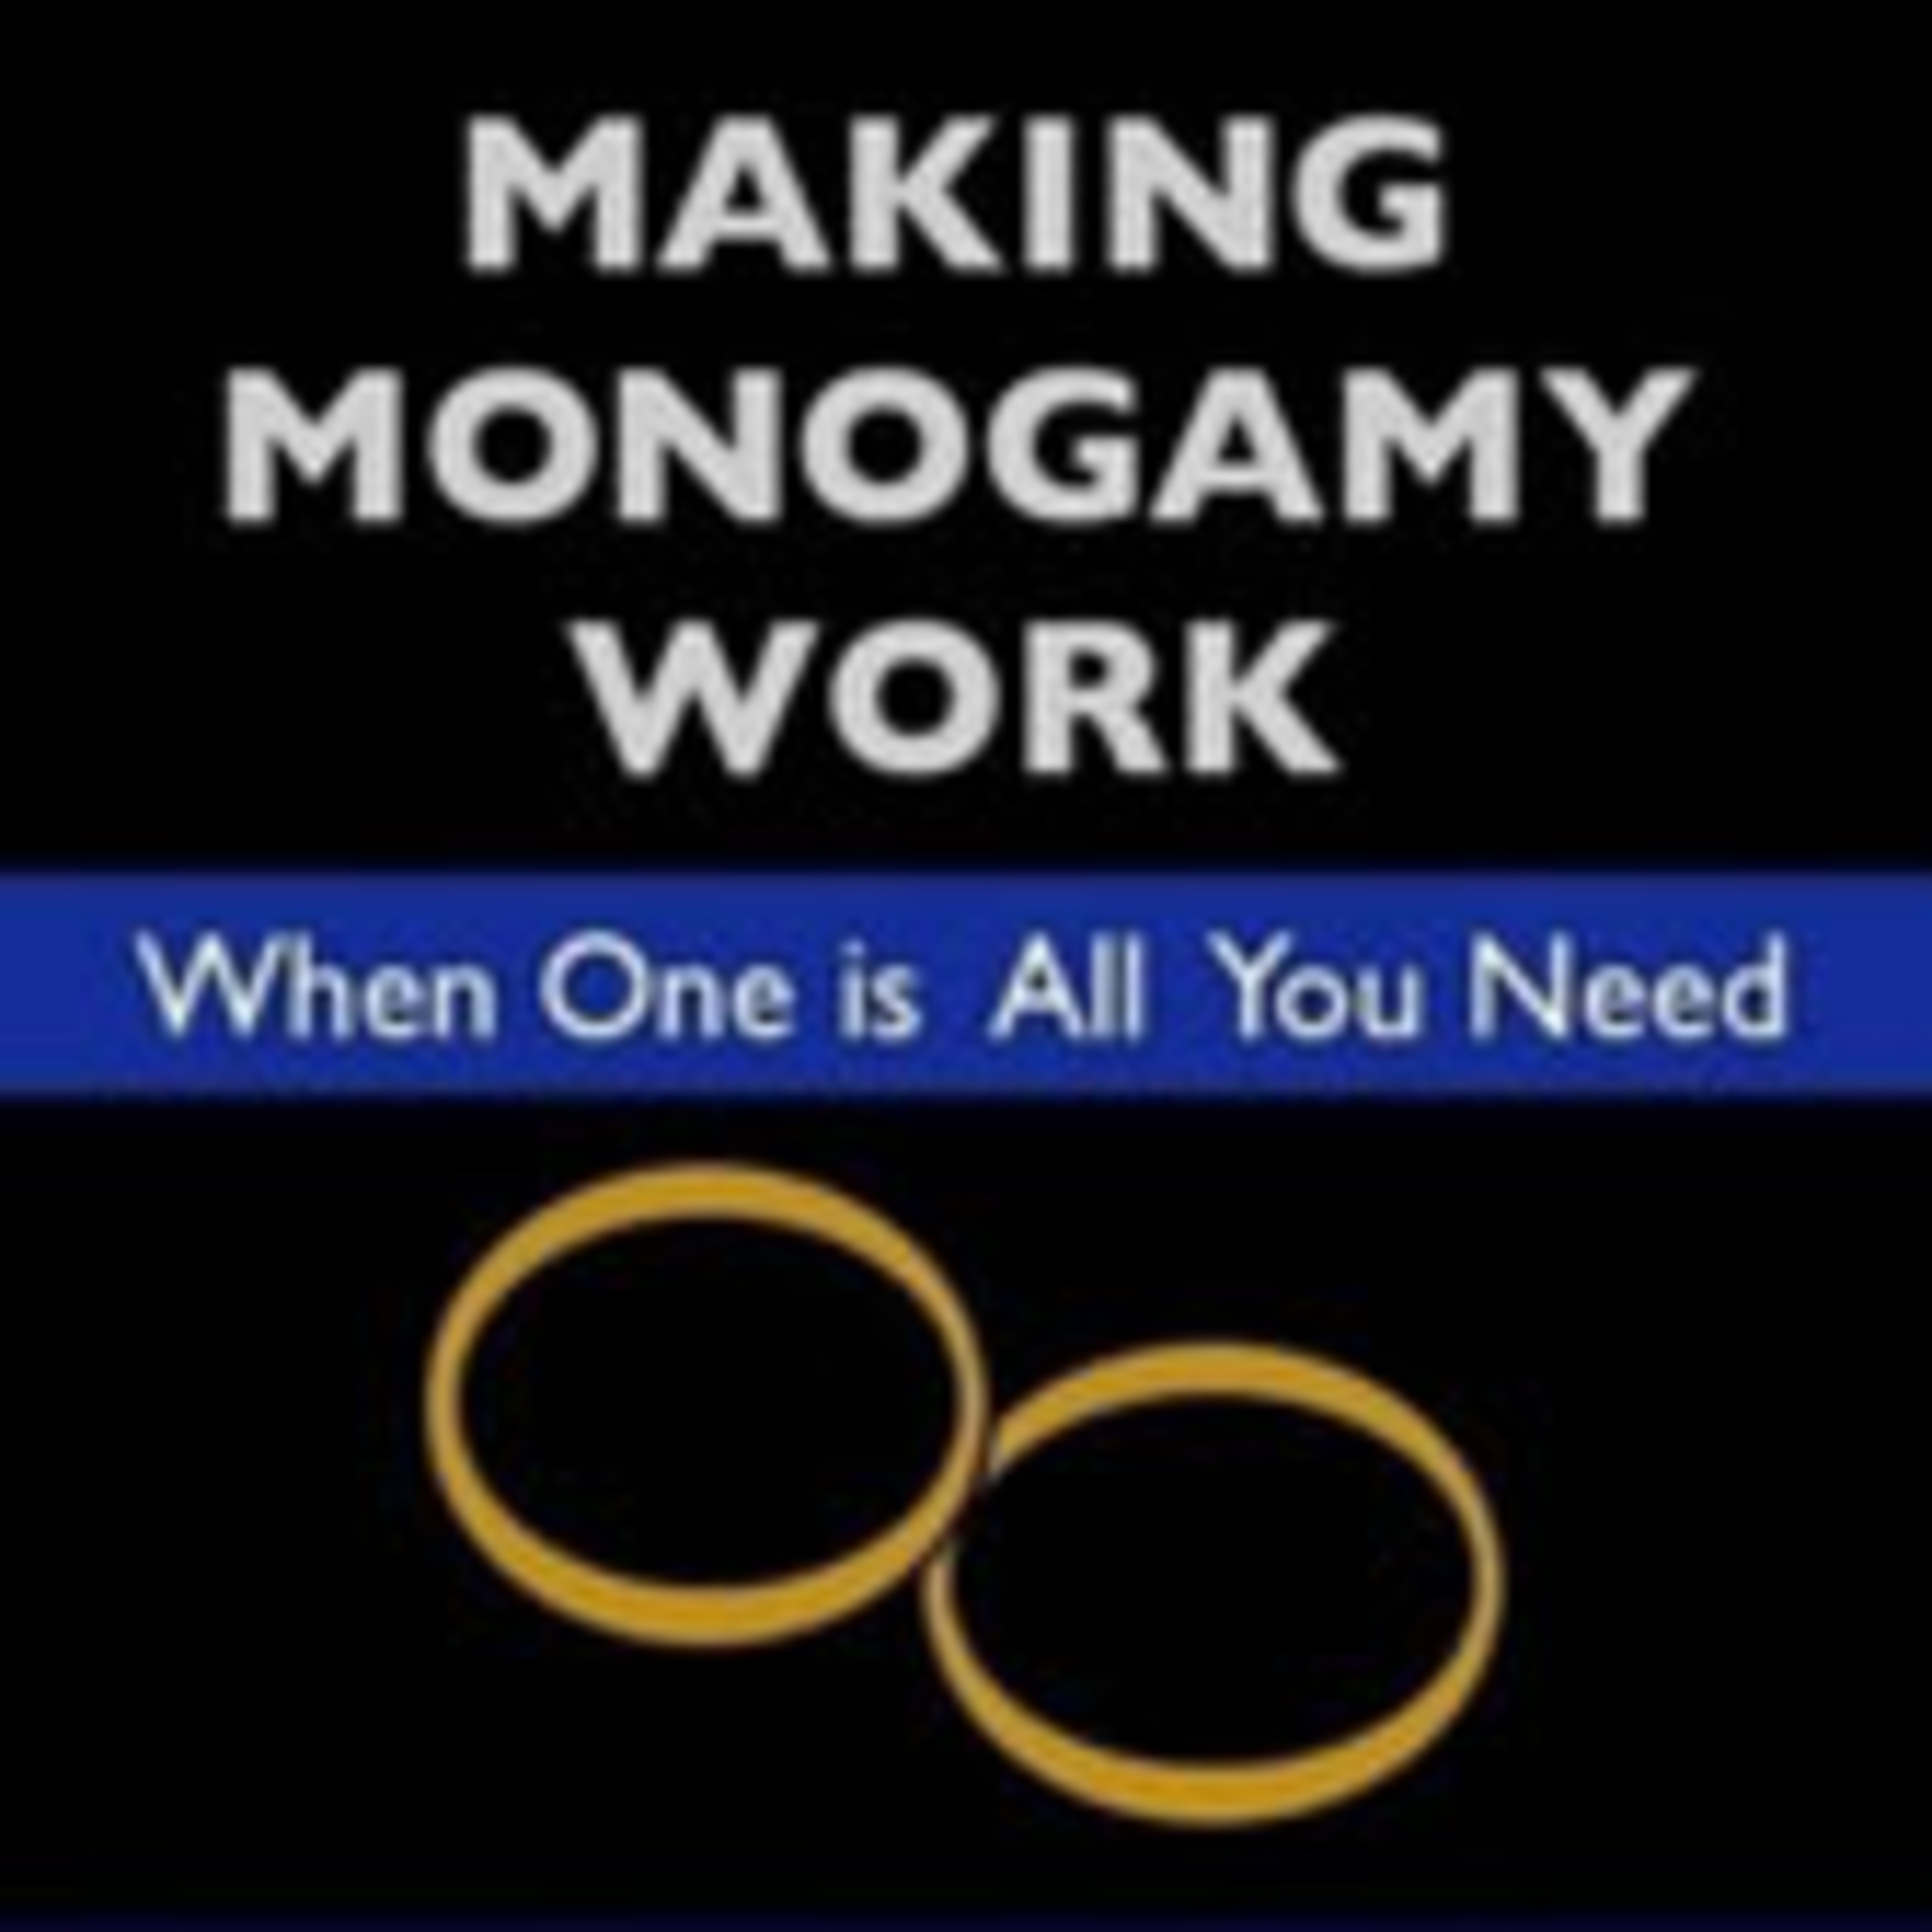 serial monogamy